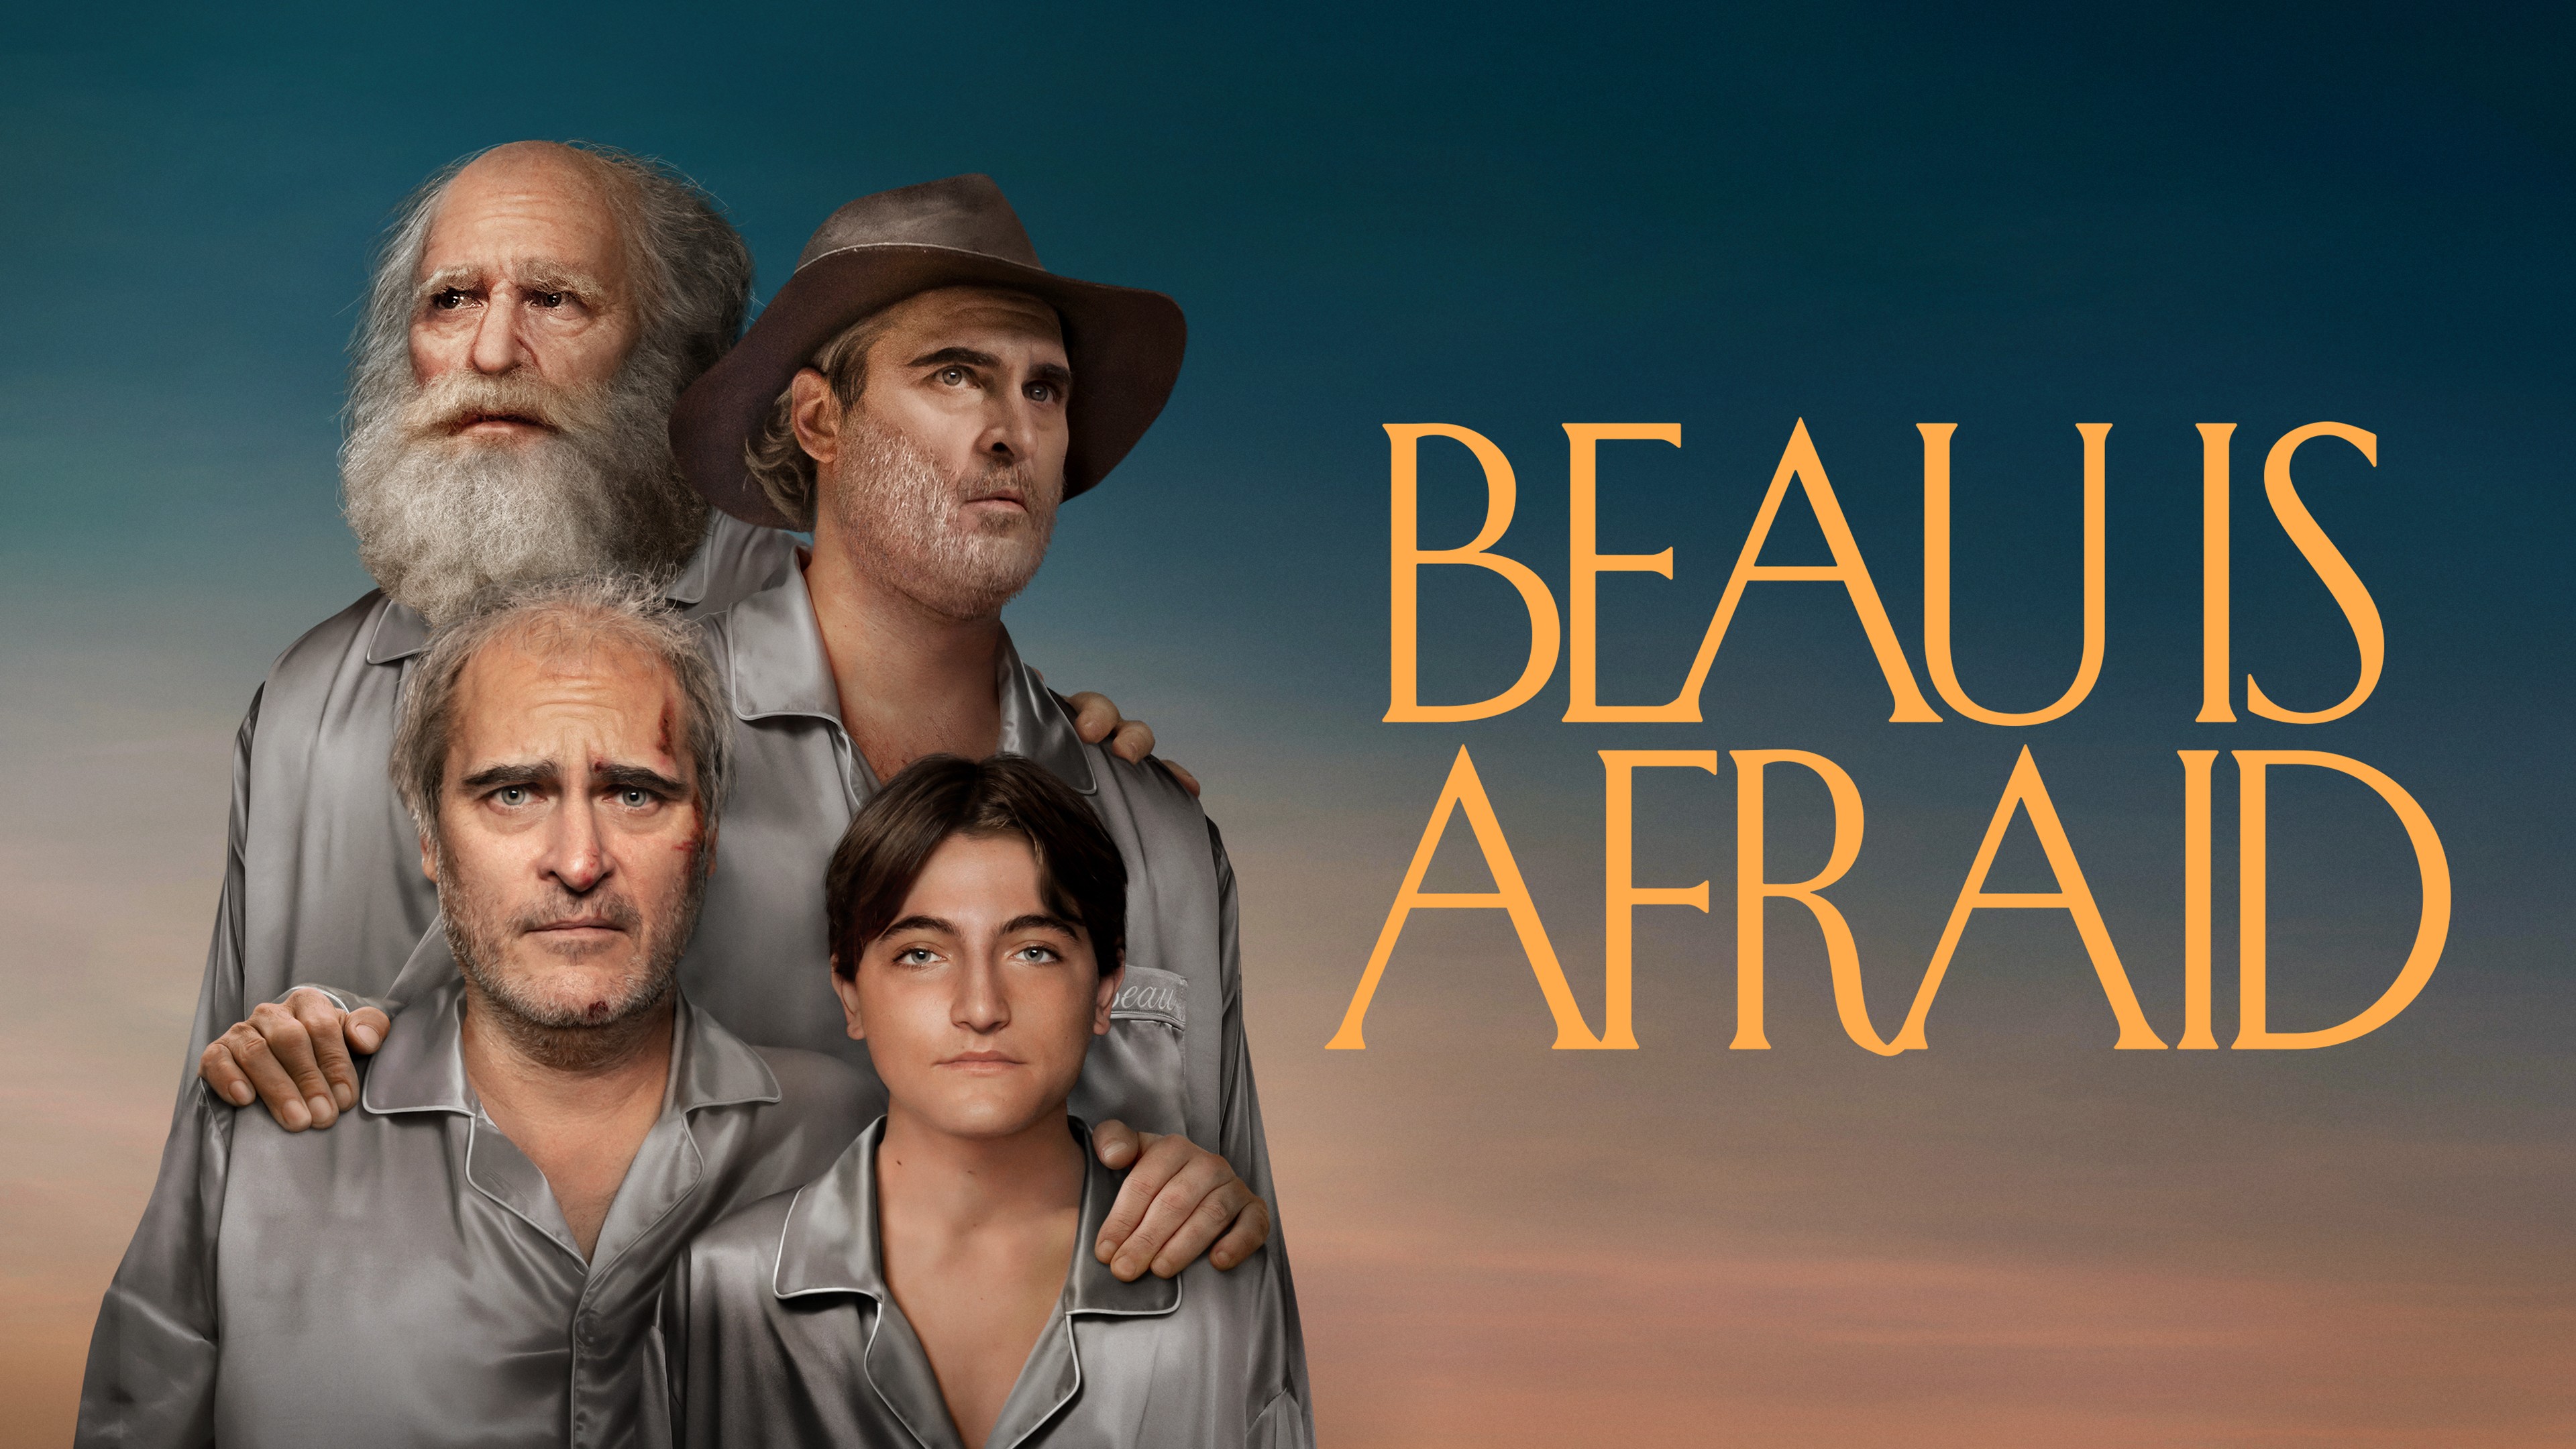 Beau Is Afraid 9.2/10 on imdb so far : r/A24